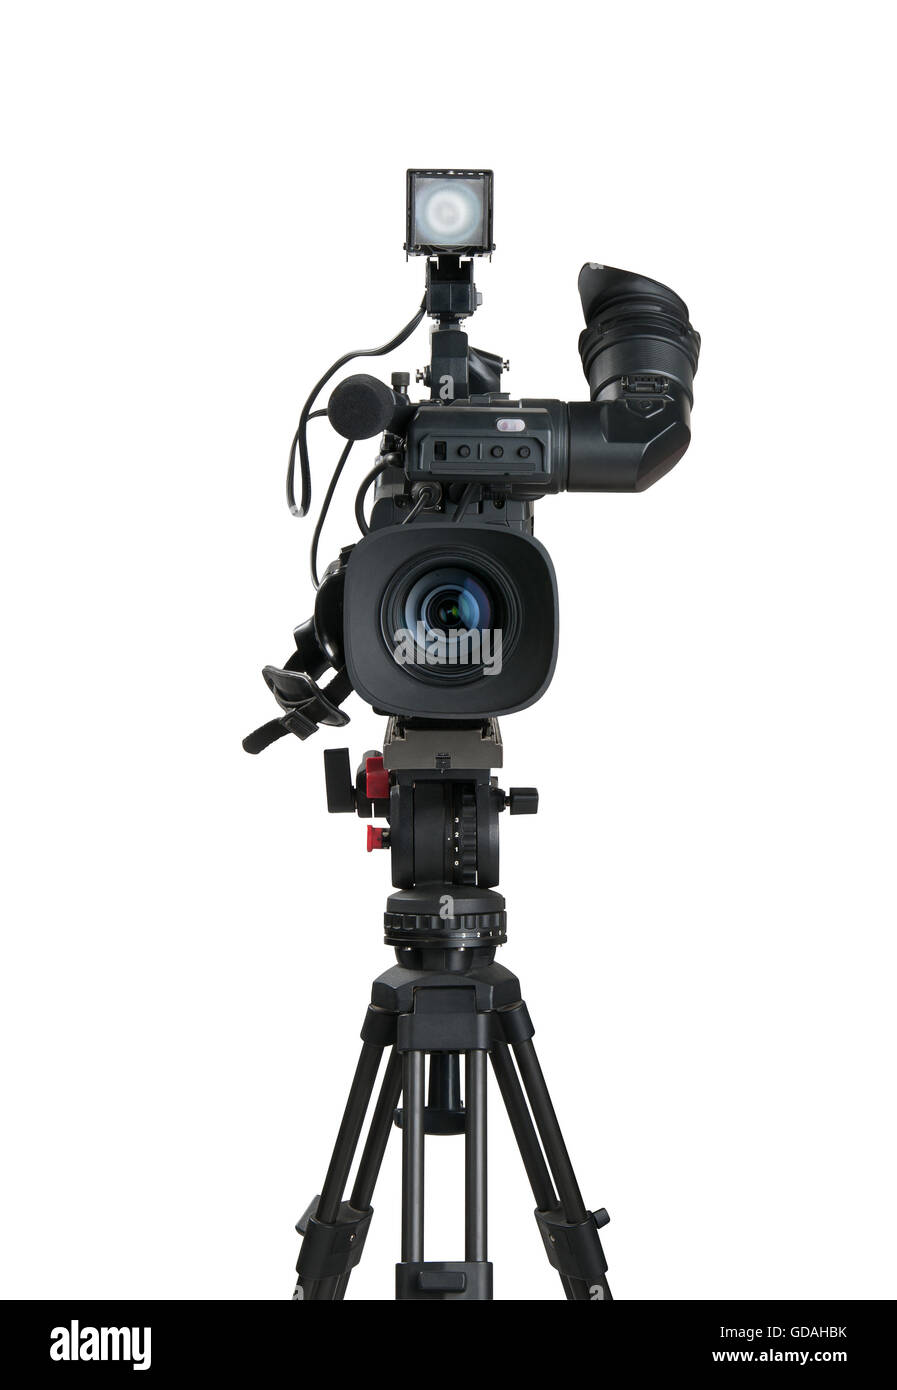 Caméra vidéo numérique professionnelle, isolé sur fond blanc Photo Stock -  Alamy